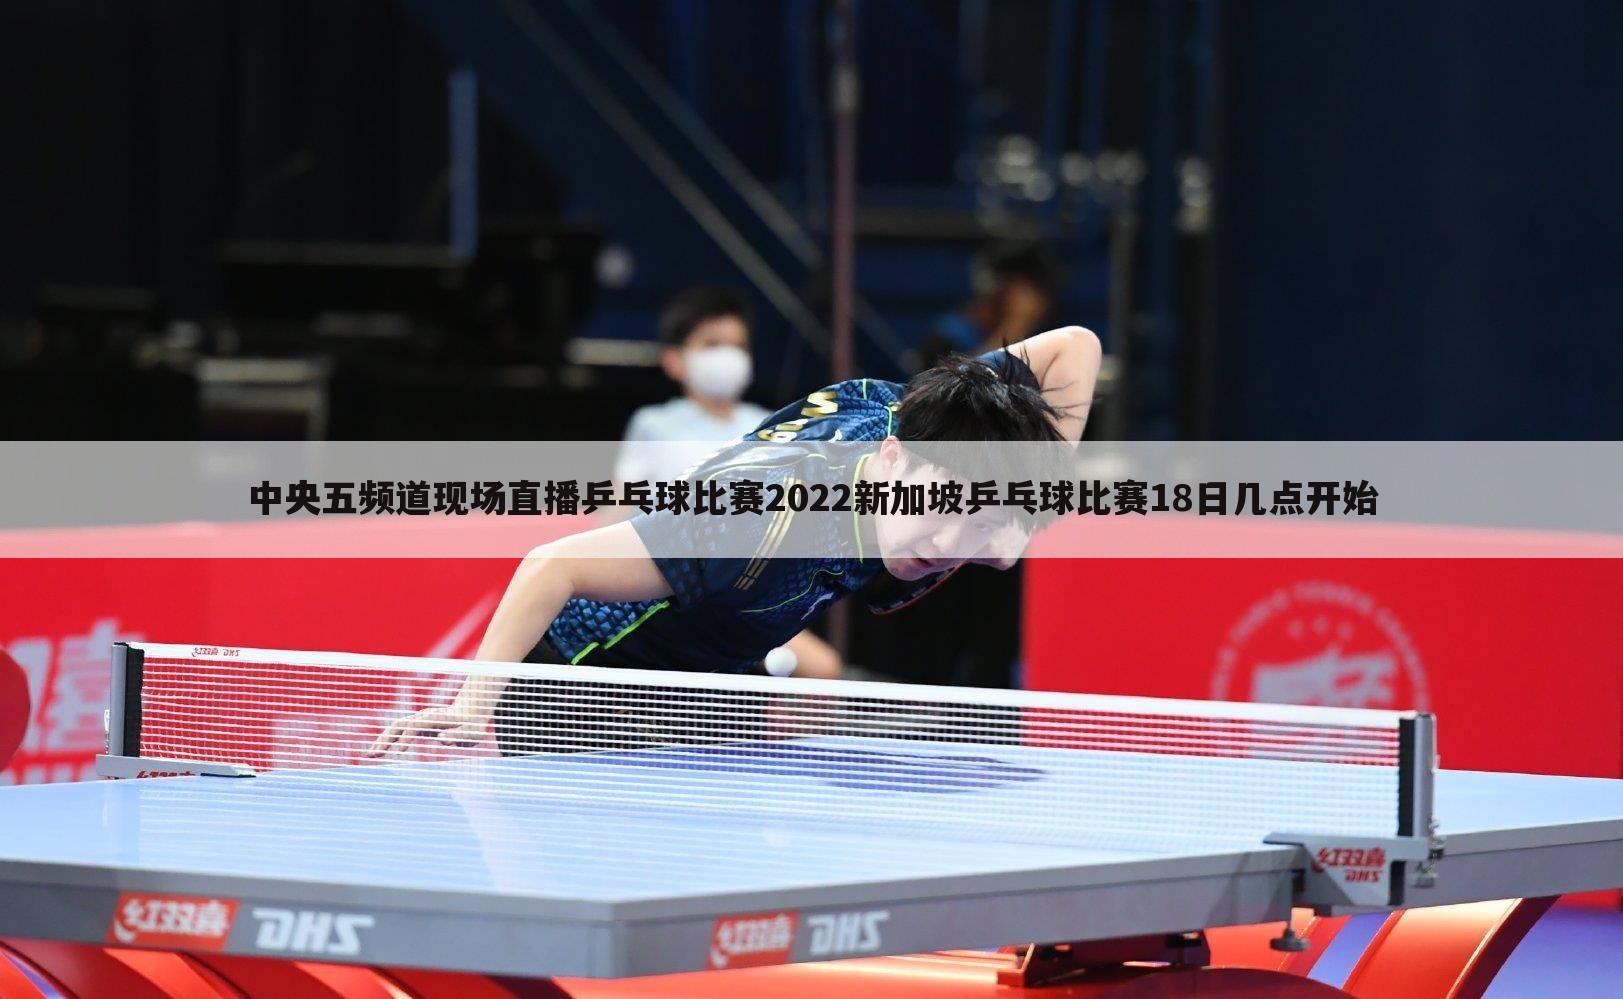 中央五频道现场直播乒乓球比赛2022新加坡乒乓球比赛18日几点开始